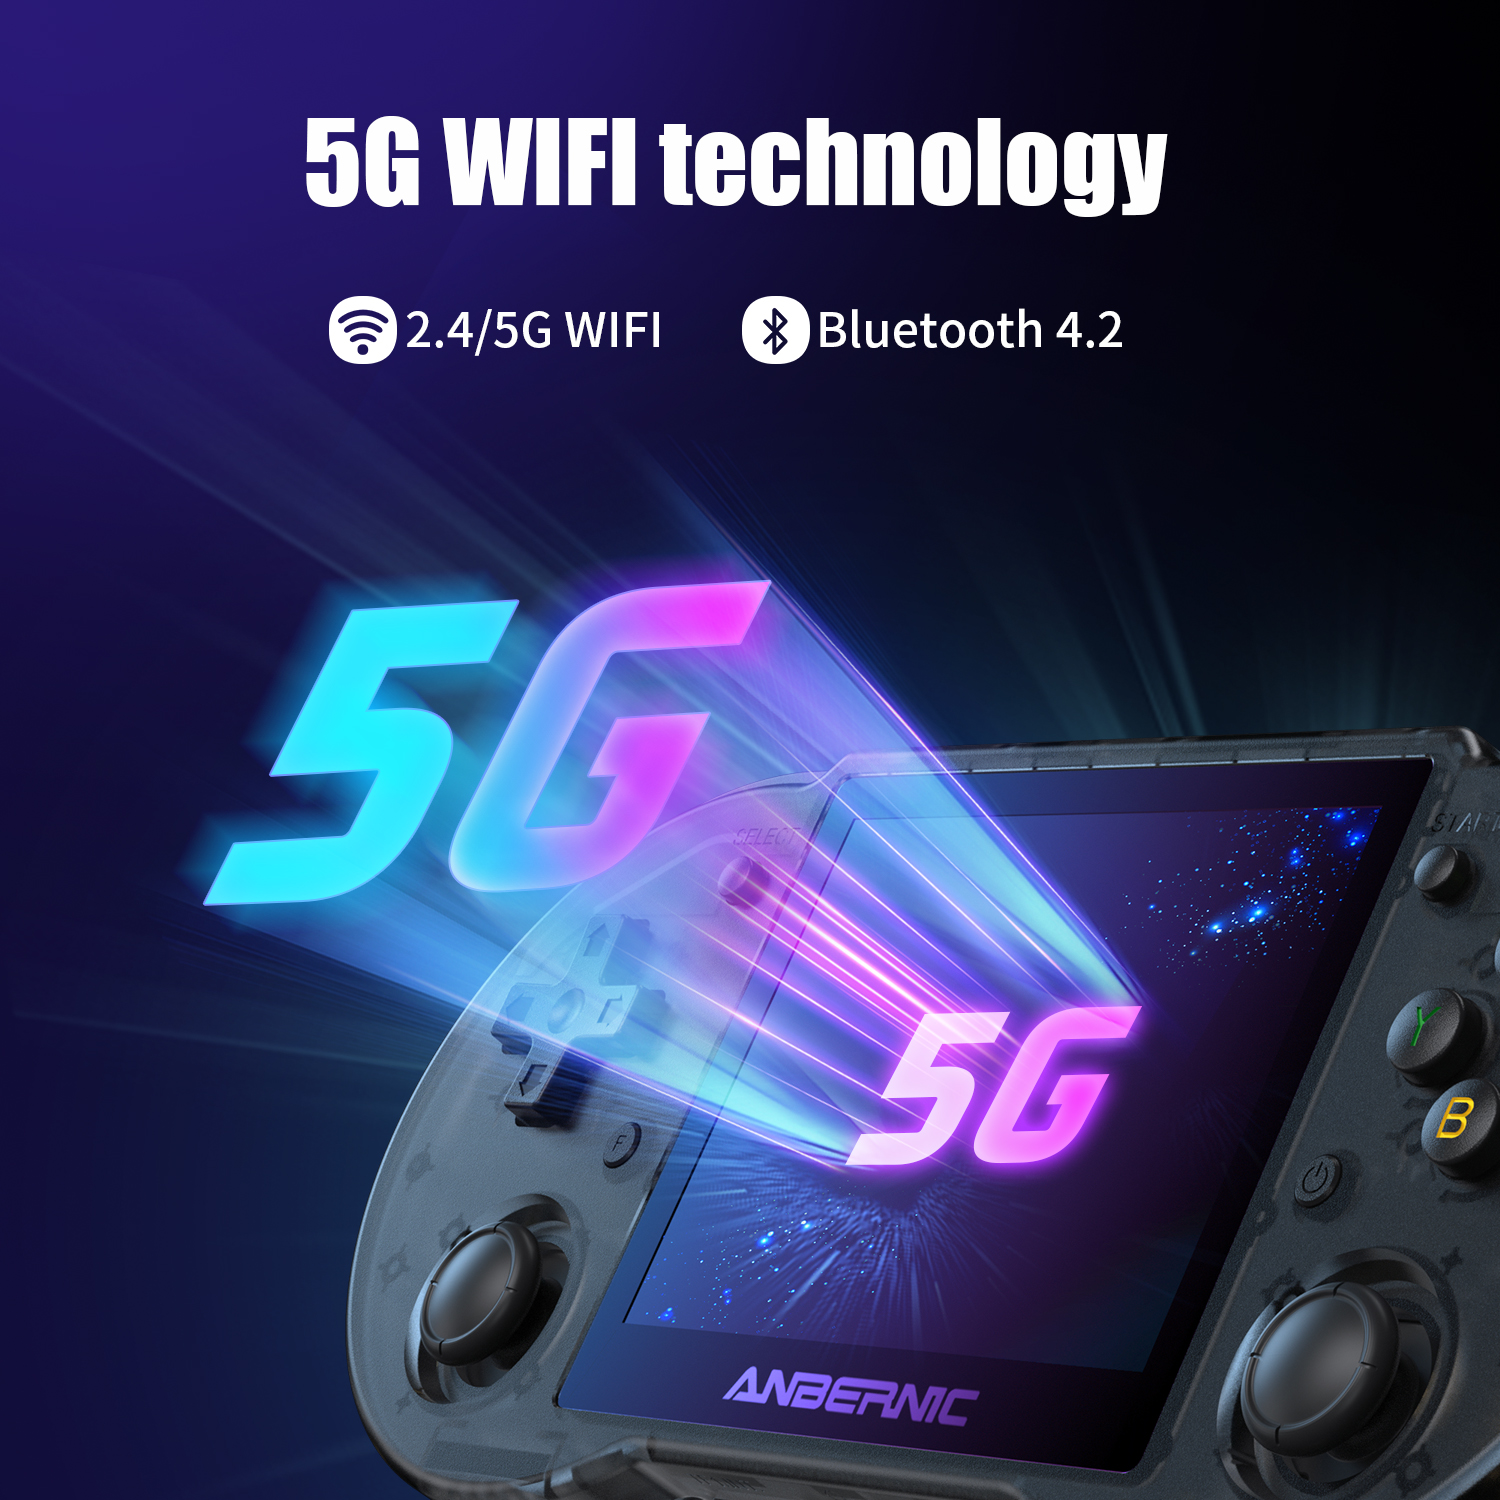 El RG353P es compatible con la tecnología WiFI 5G